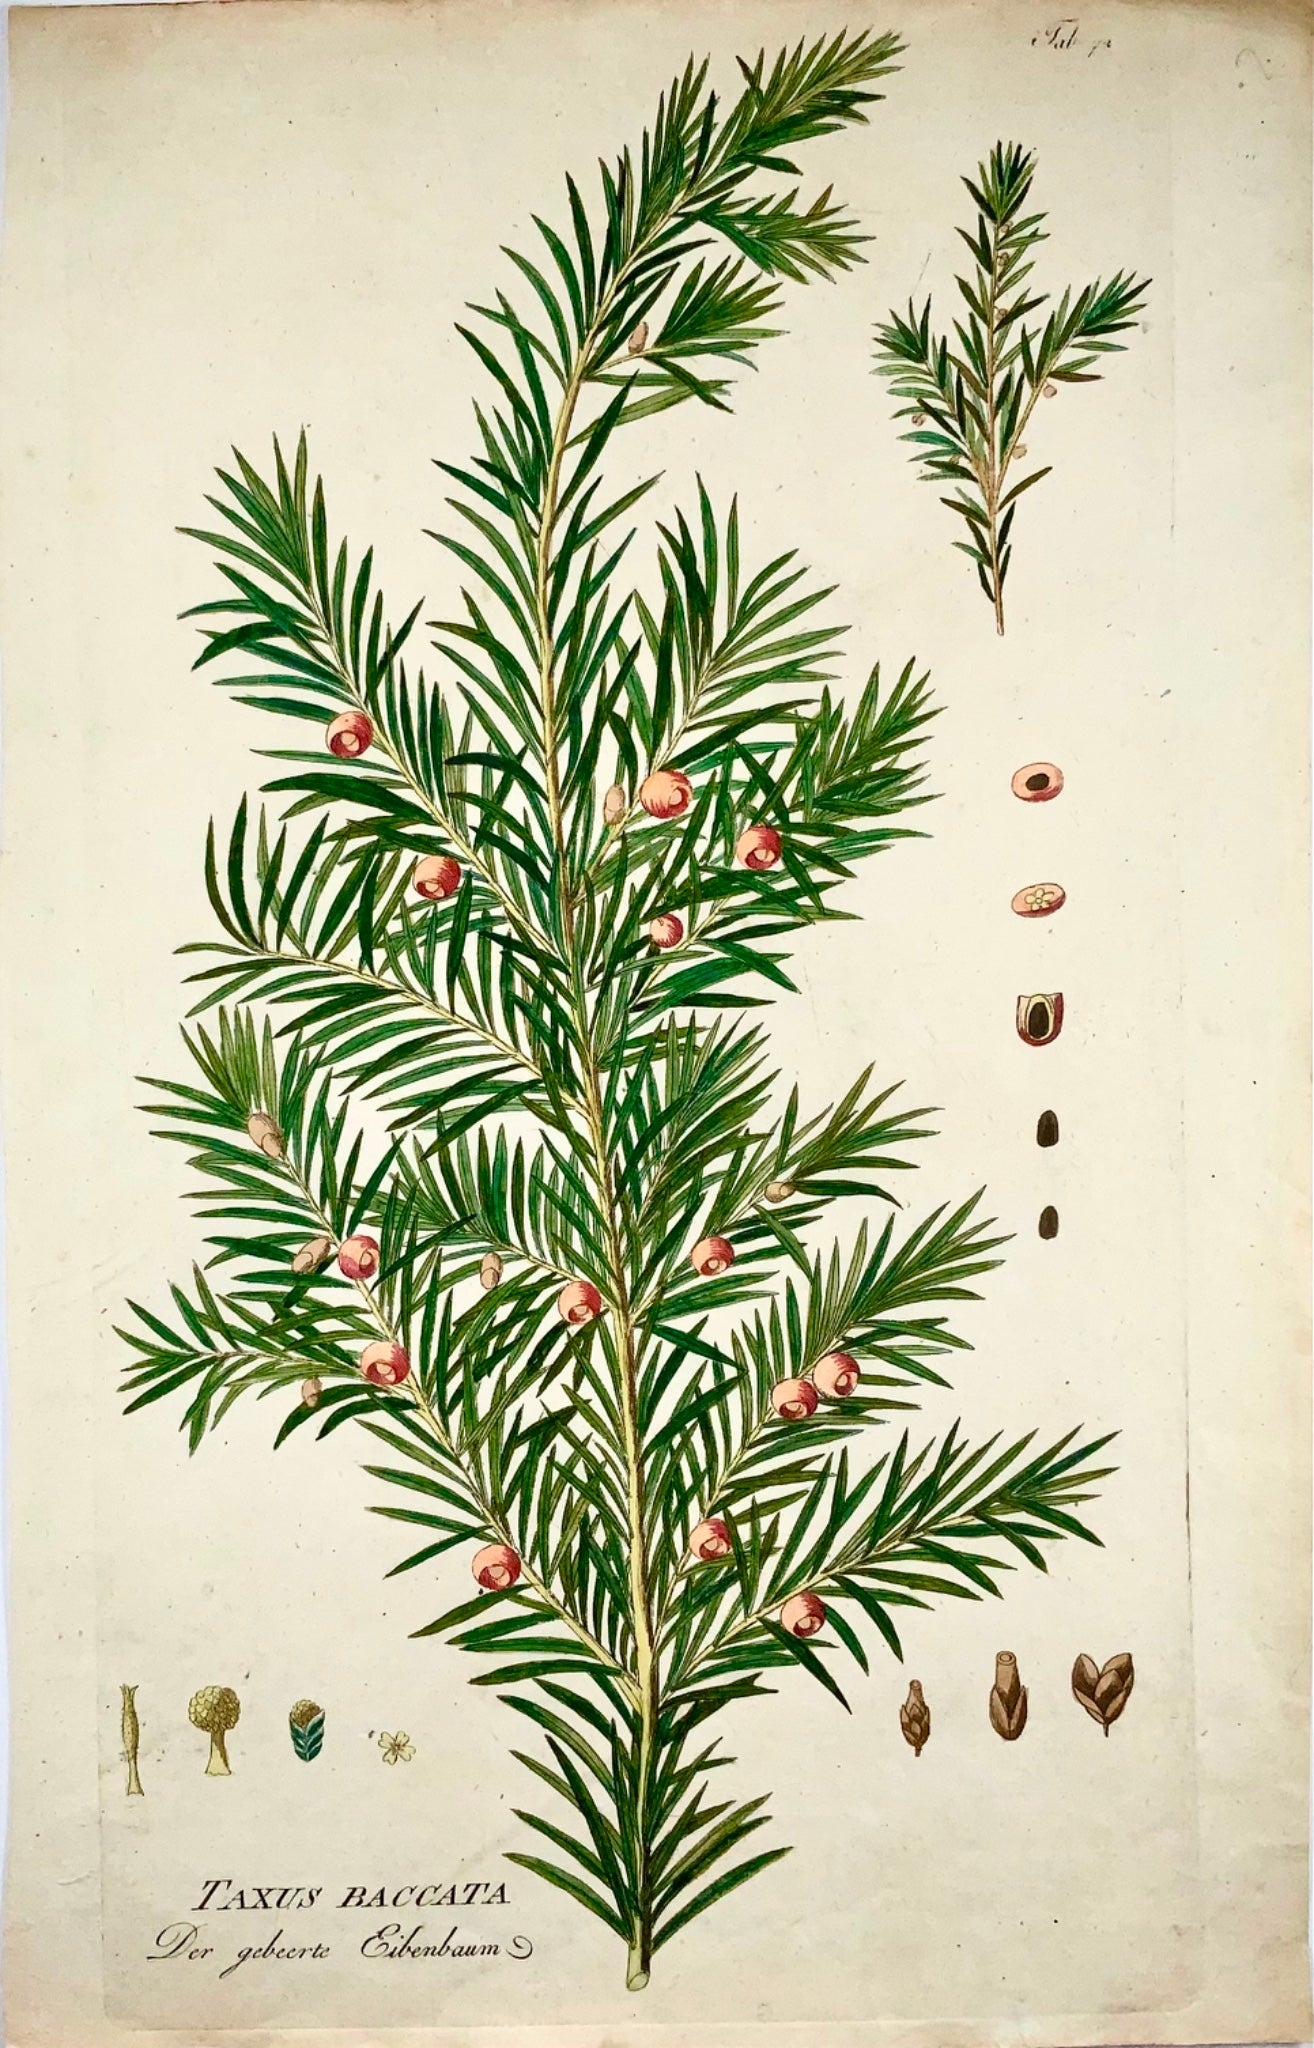 1788 Albero di tasso, dendrologia, JJ Plenck, Icones plantarum, 45 cm, folio